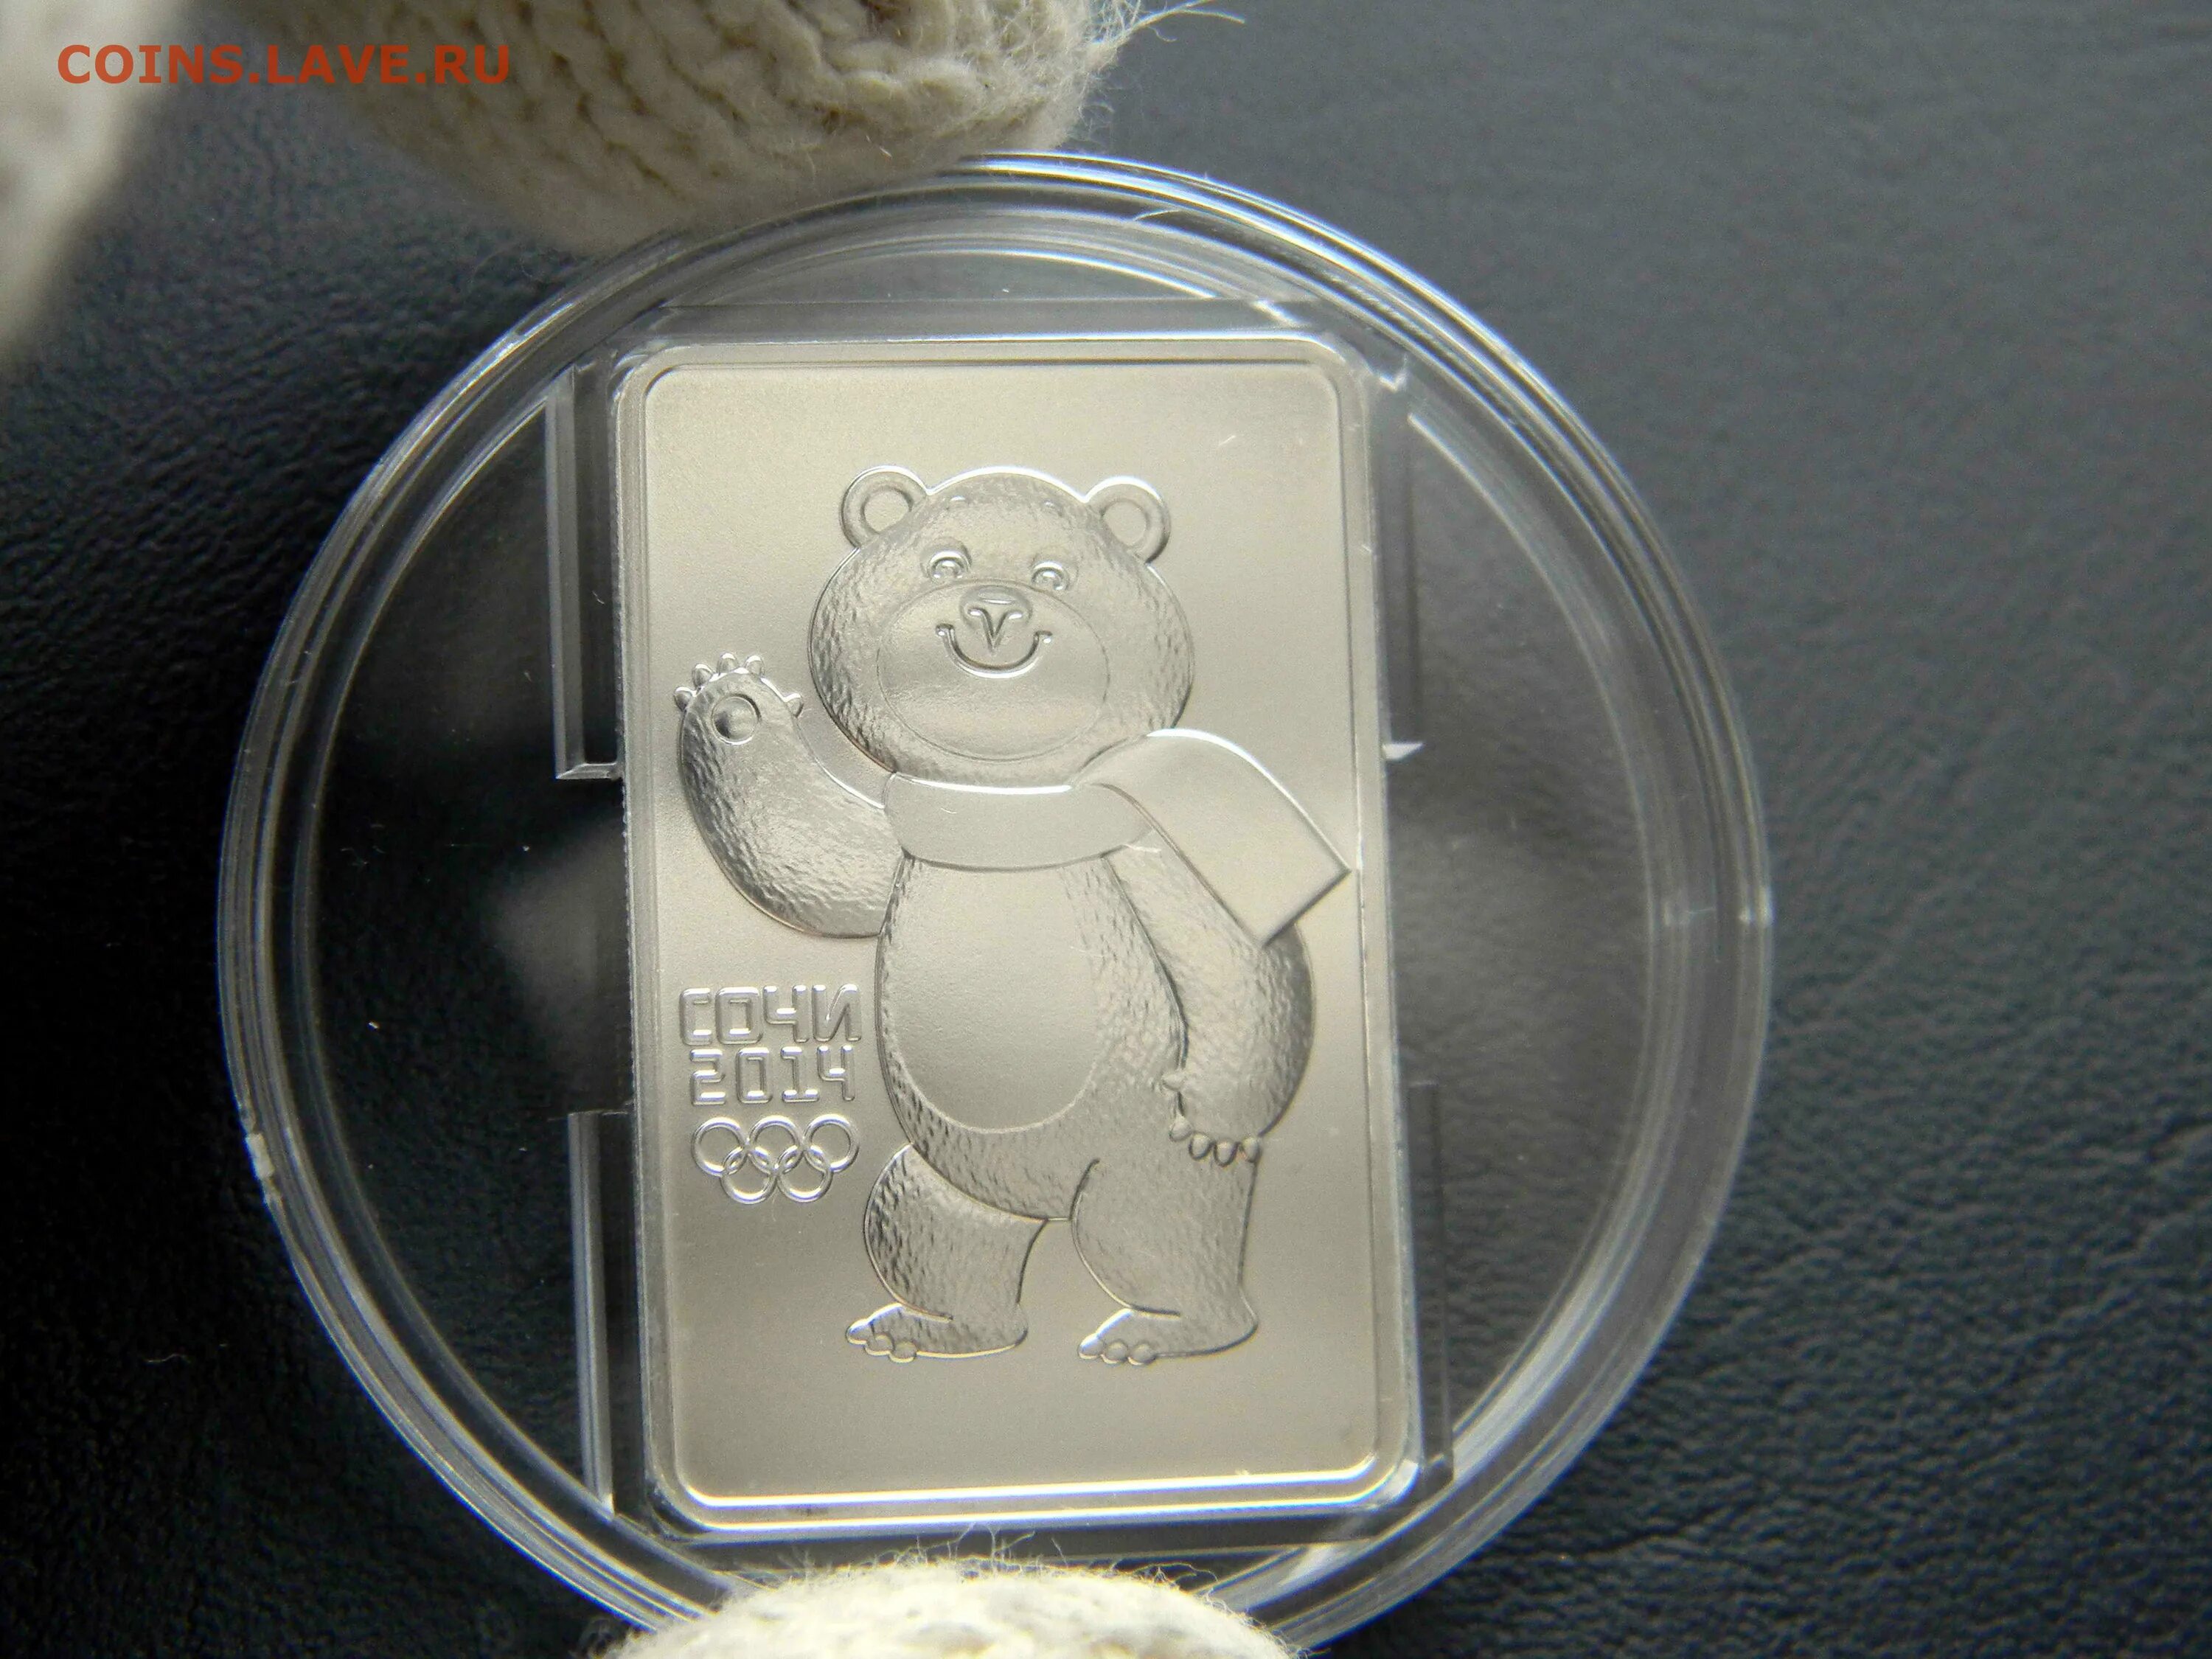 3 Рубля Сочи 2014 серебро мишка. 3 Рубля мишка Сочи. Монета Сочи серебряная круглая медведь. Коробка мишка белая тиснение на крышке. Сочи серебро 3 рубля